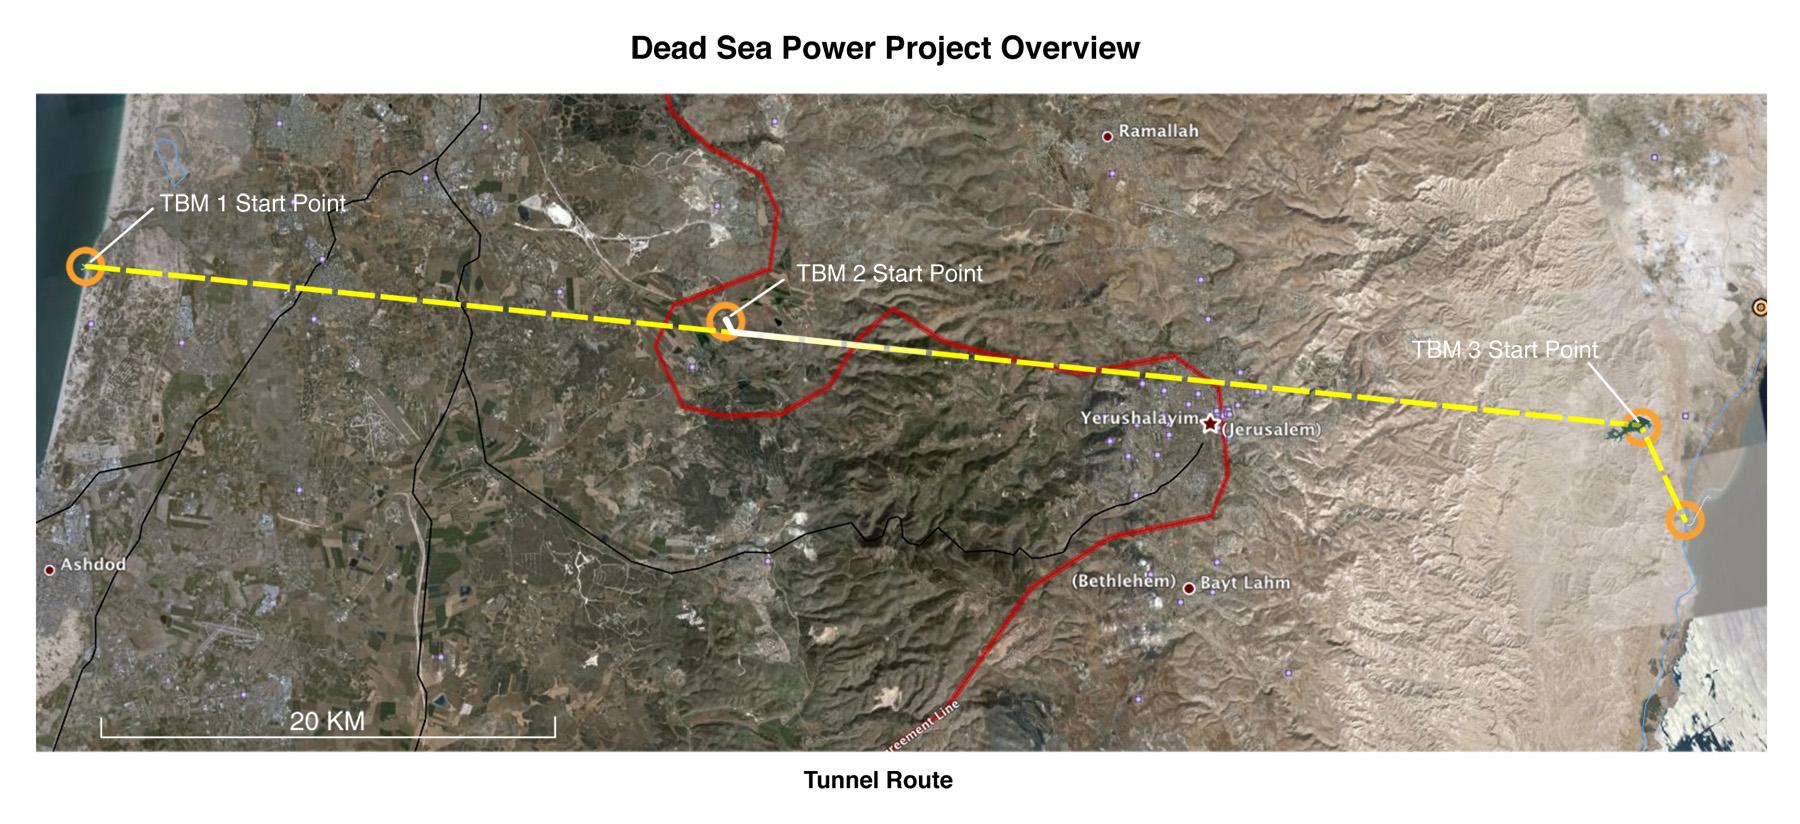 Dead Sea Power Project